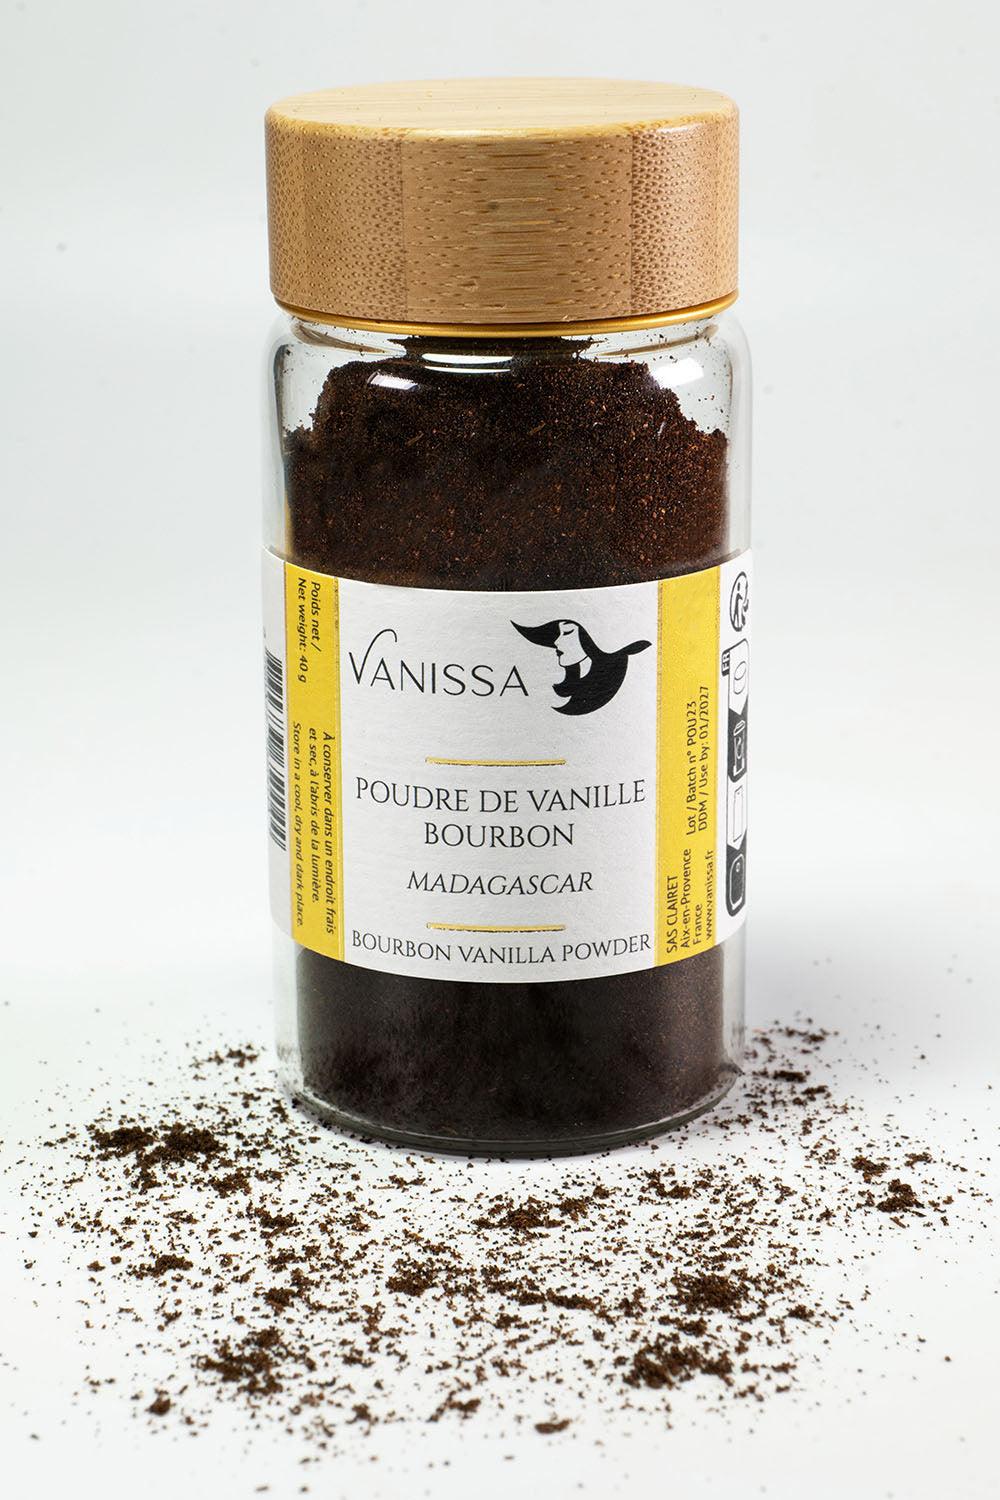 Poudre de Vanille Bourbon 100% Gousse - Madagascar